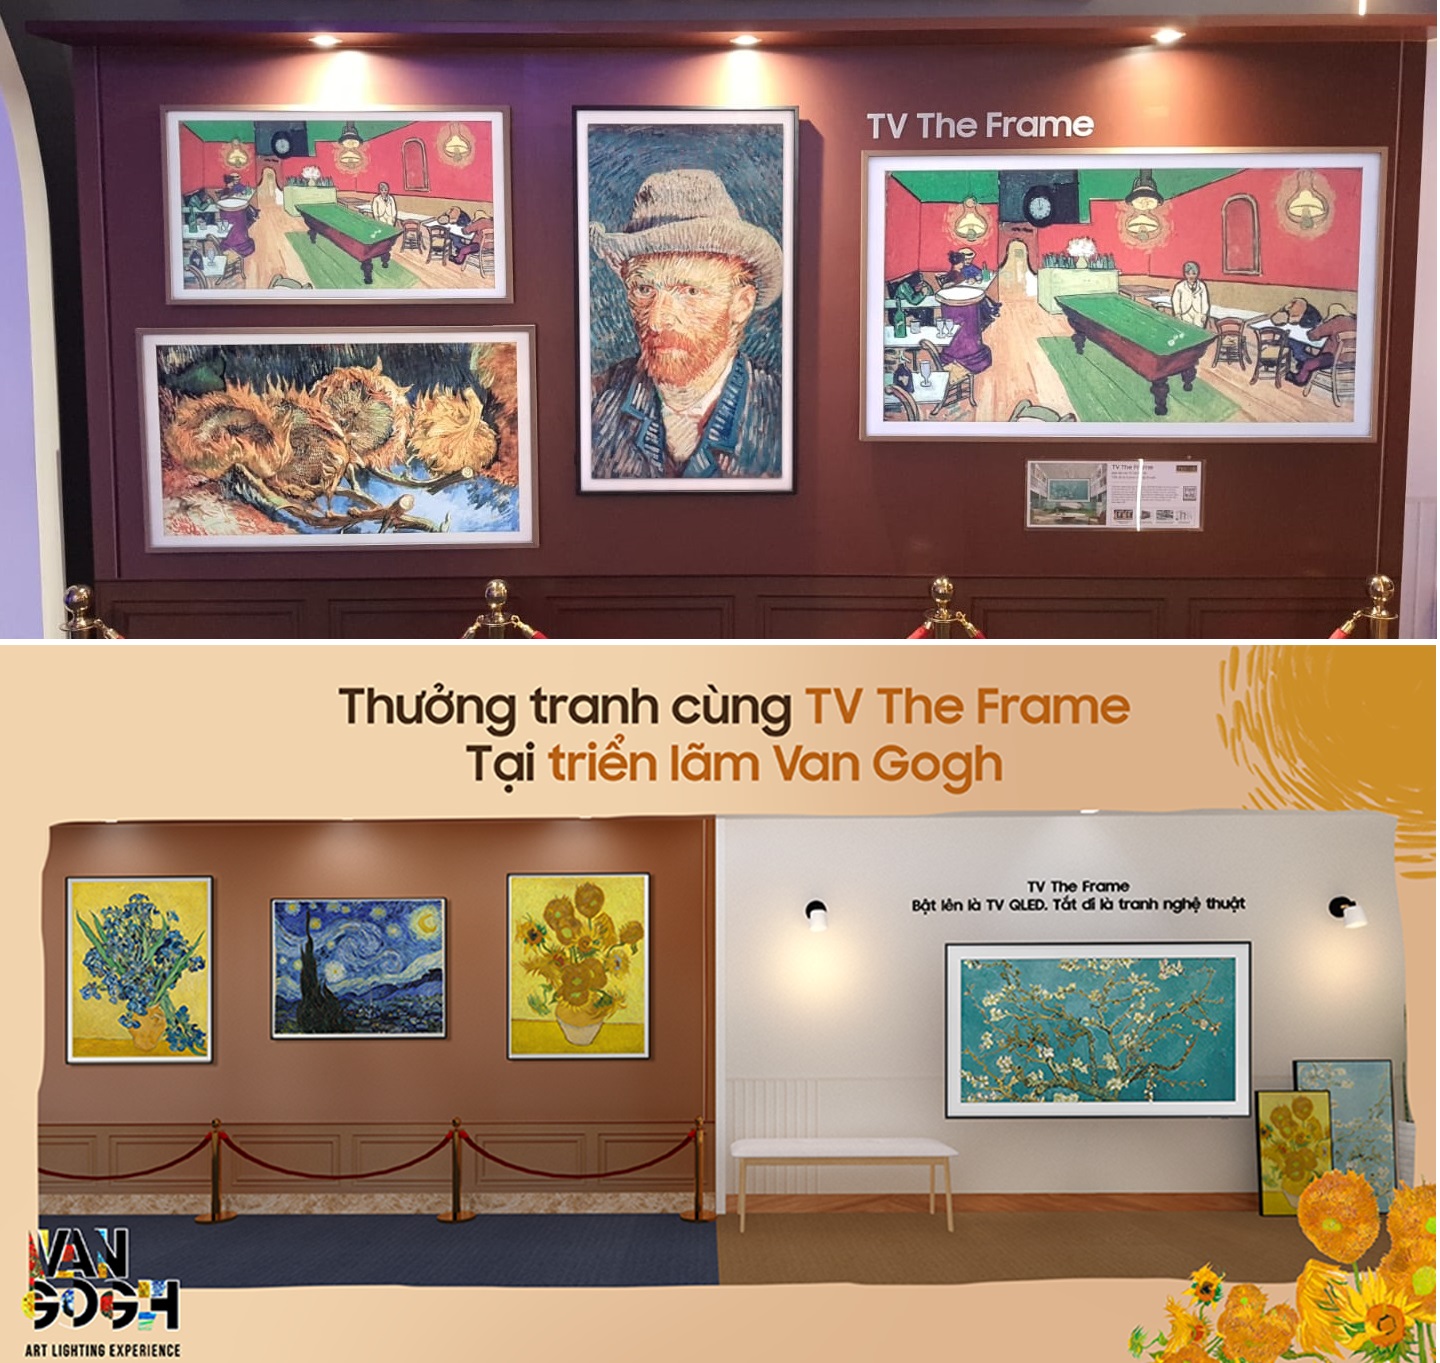 Lạc lối giữa không gian nghệ thuật Van Gogh cùng TV The Frame - Ảnh 2.